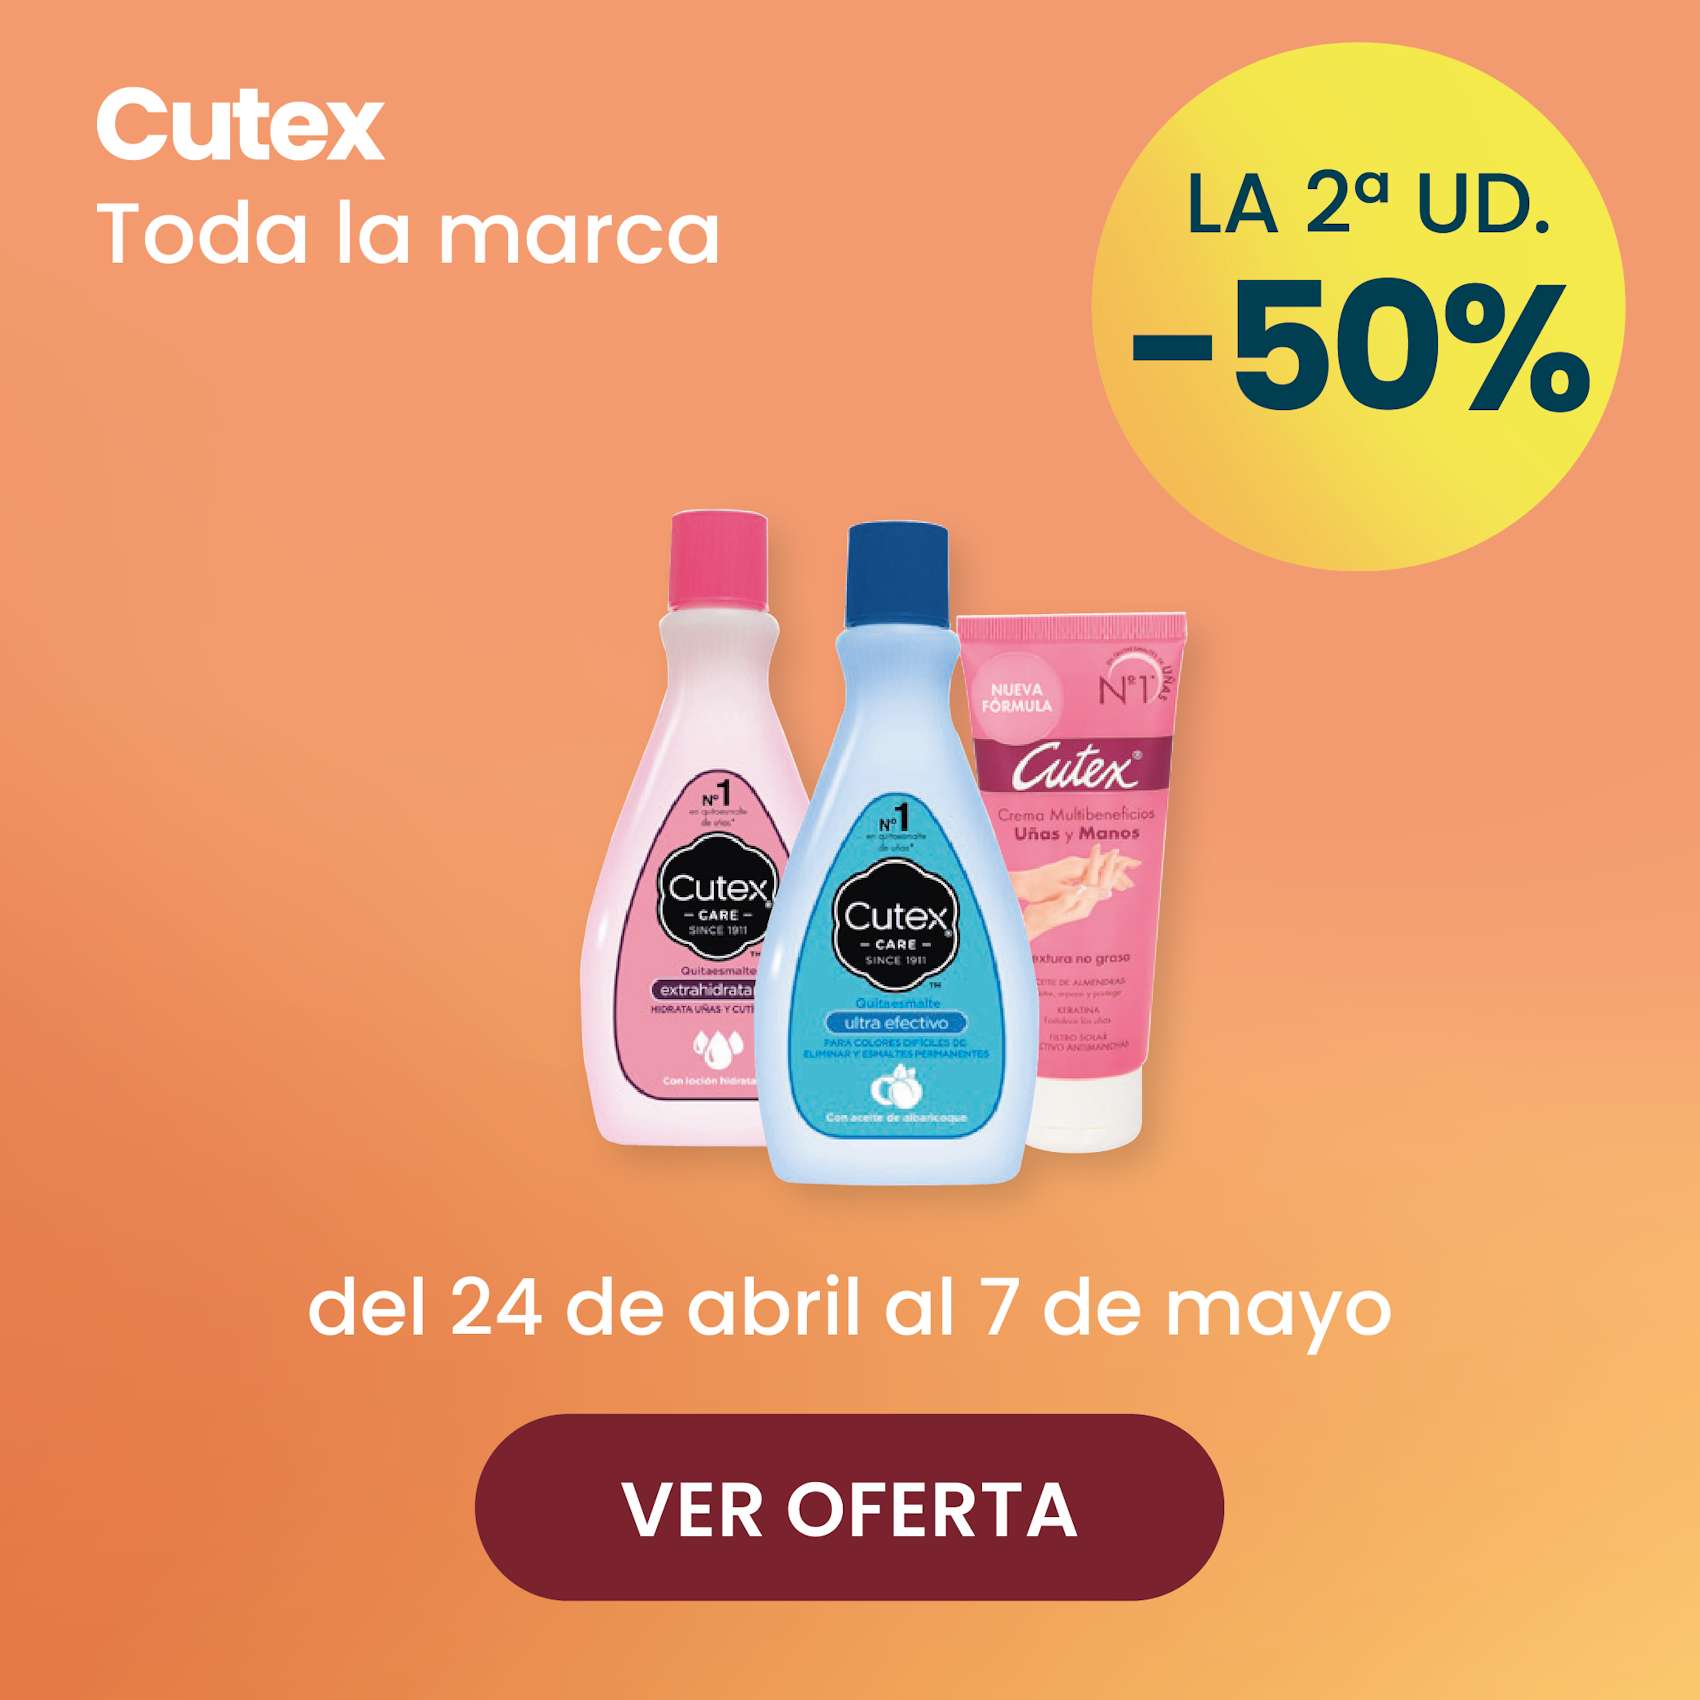 CUTEX TODA LA MARCA -50% la 2ª ud.